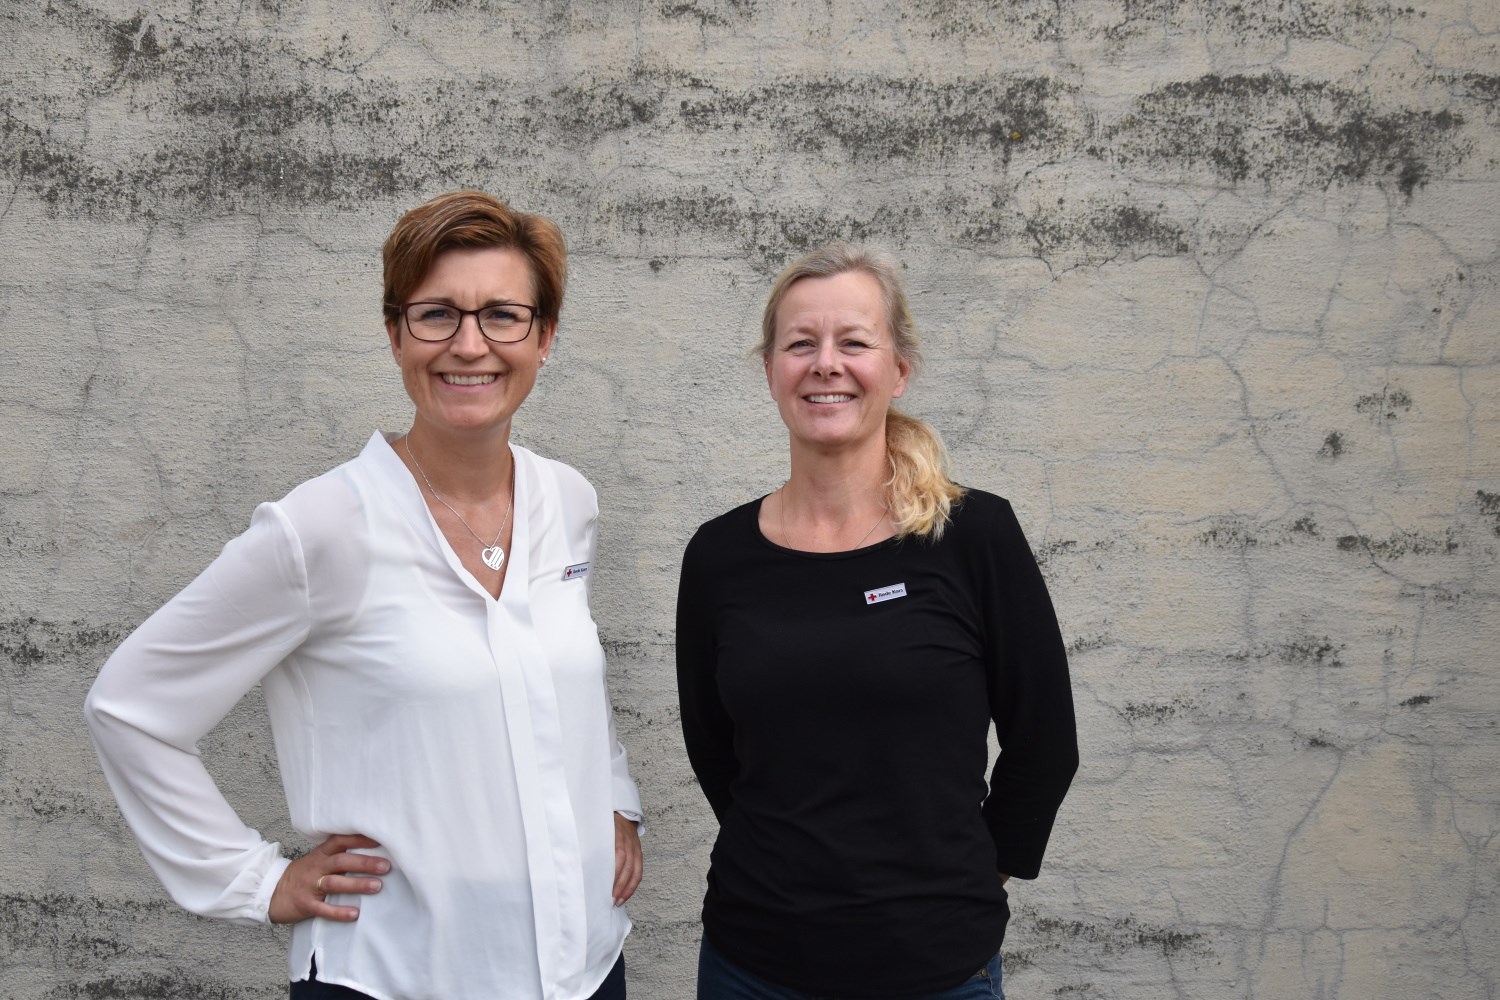 STÅR KLAR: Ellen Haagenrud Grønlid (til høyre) står klar til å ta over rollen som daglig leder i Telemark Røde Kors etter Stine Brekka Skoland. (Foto: Bjørn Sodeland)